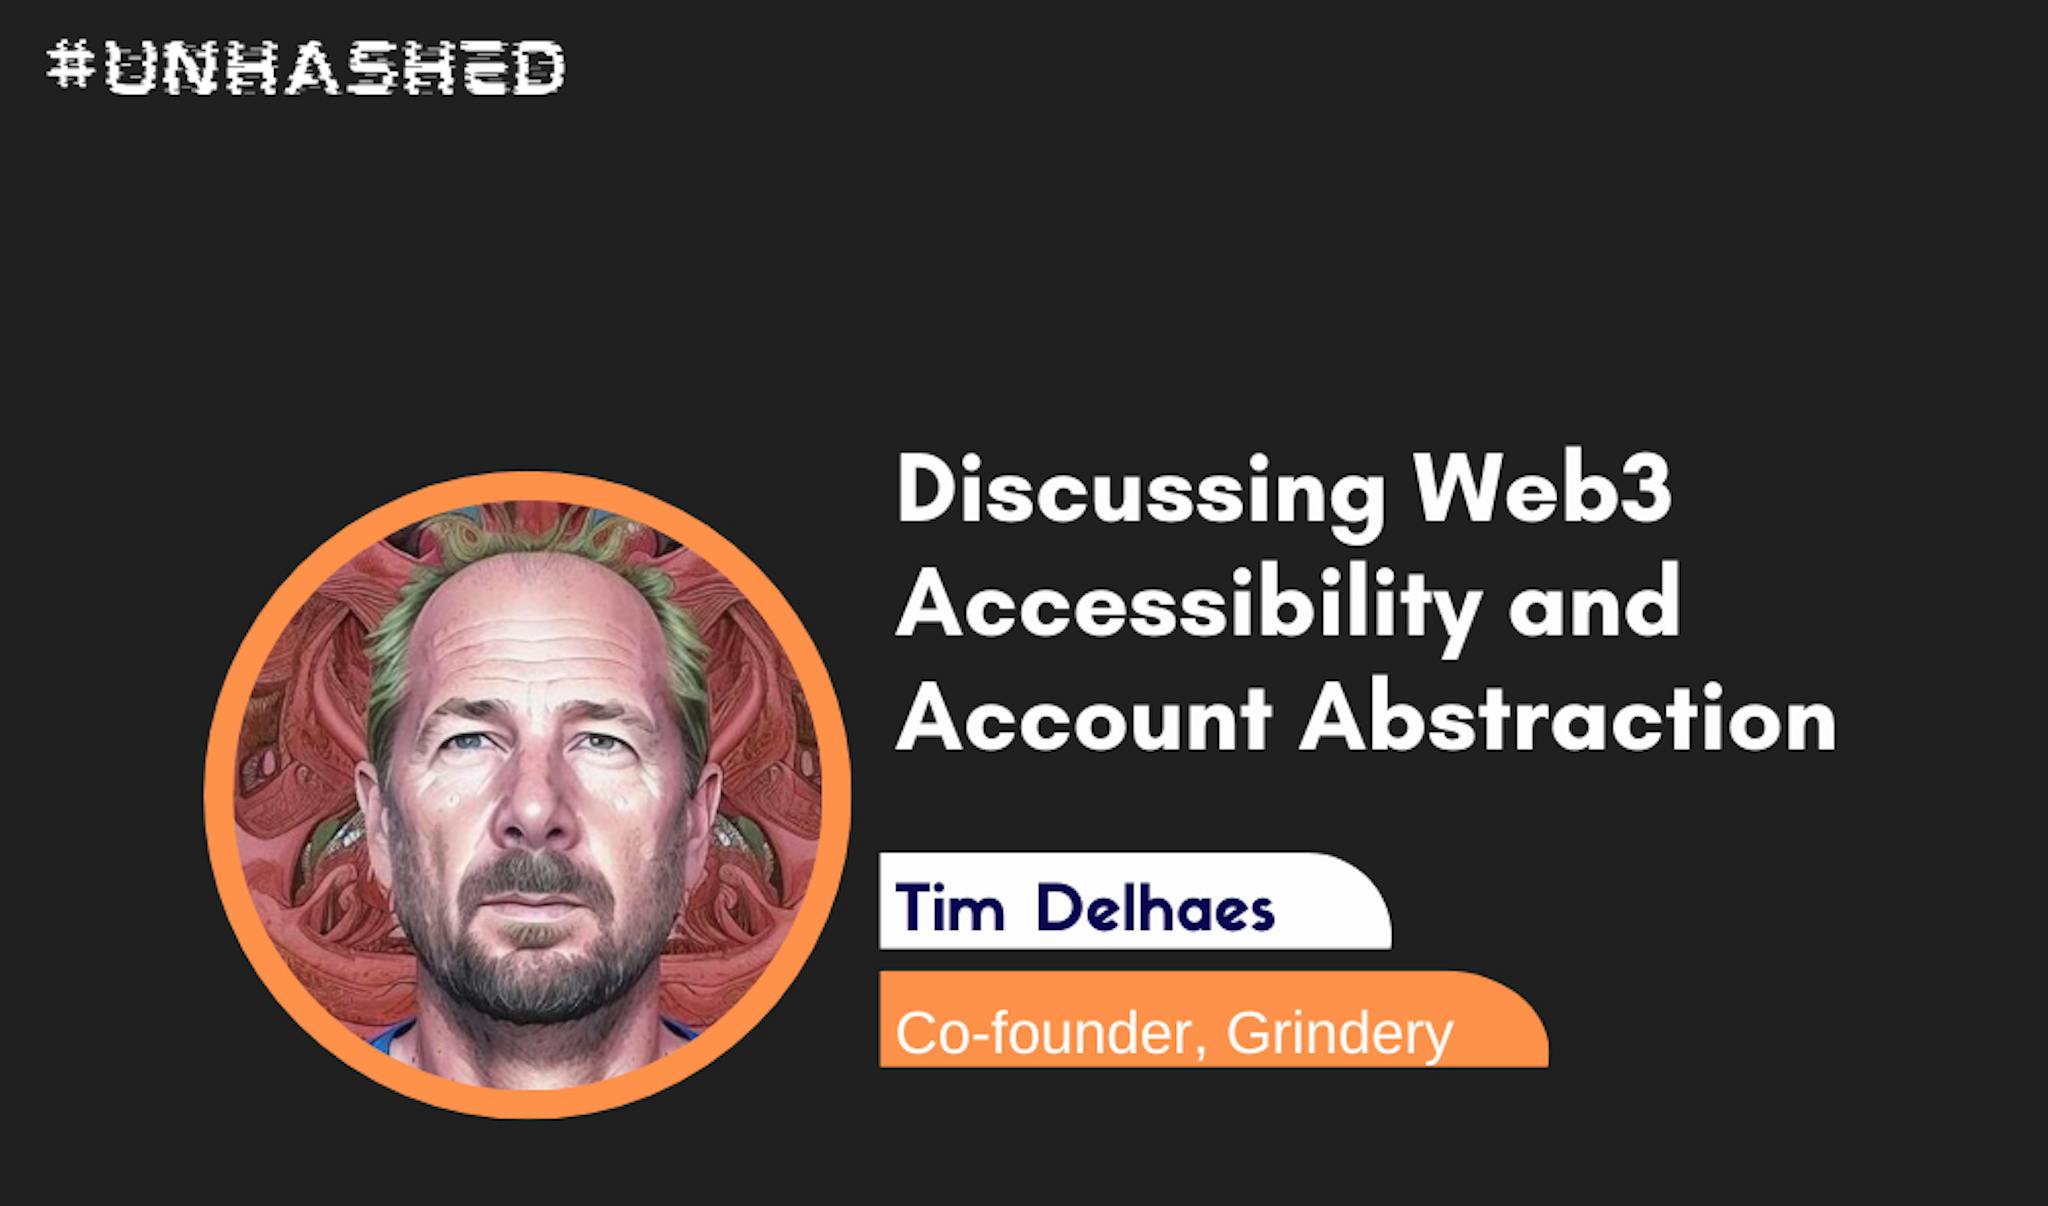 featured image - Đưa Web3 vào túi của mọi người: Cuộc thảo luận với Tim Delhaes, người đồng sáng lập Grindery